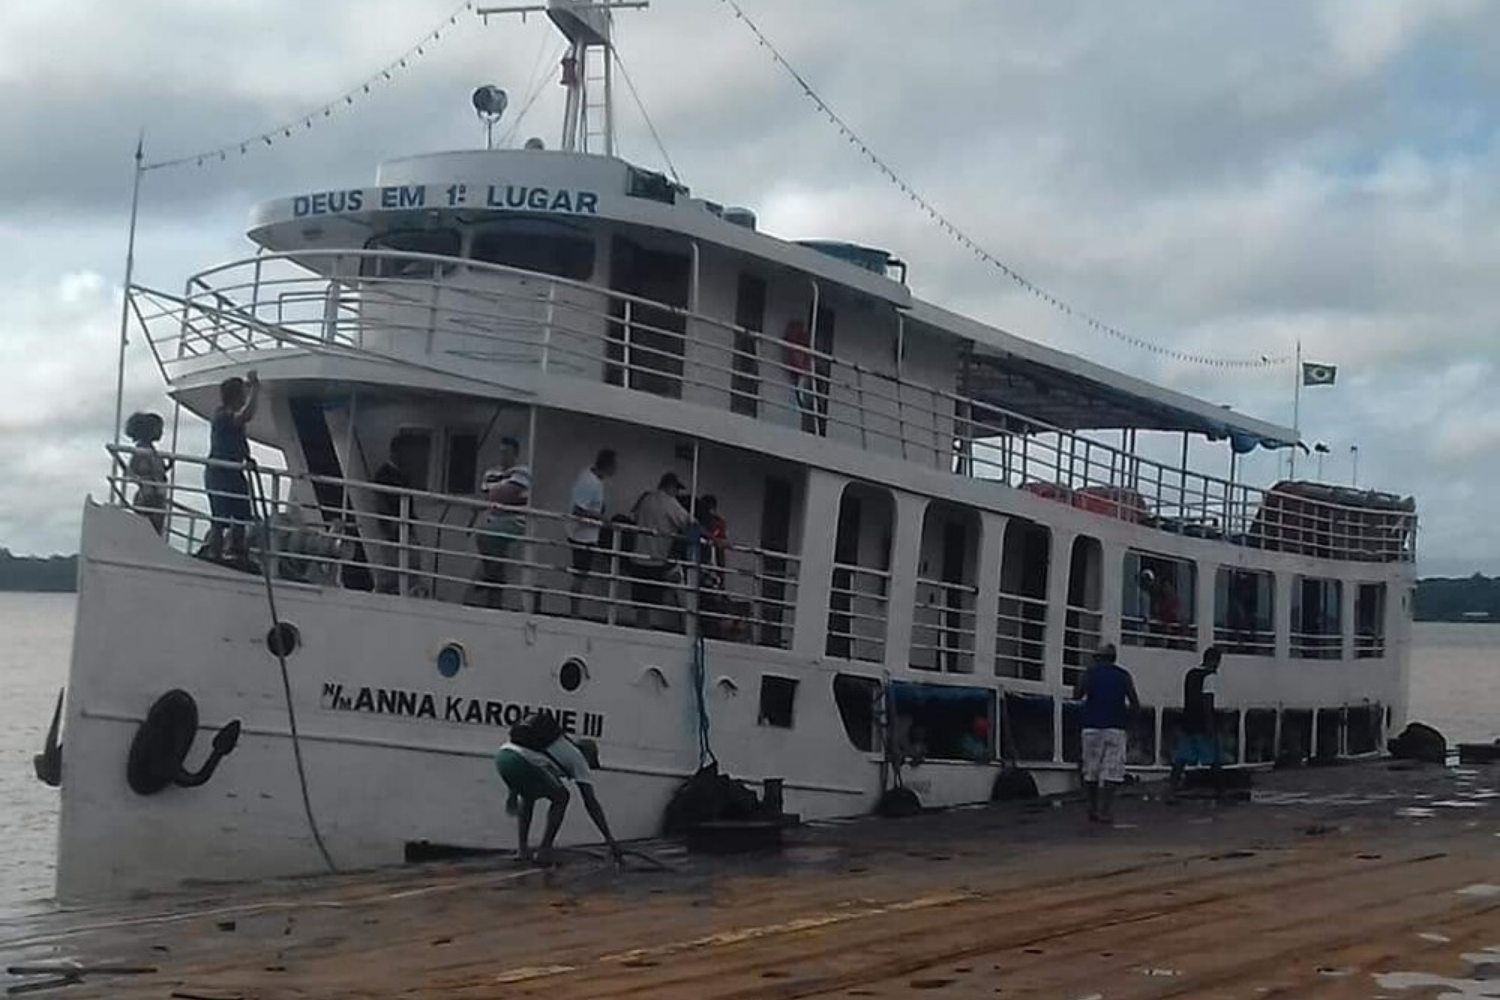 Pelo menos 13 pessoas morreram em naufrágio no Sul do Amapá